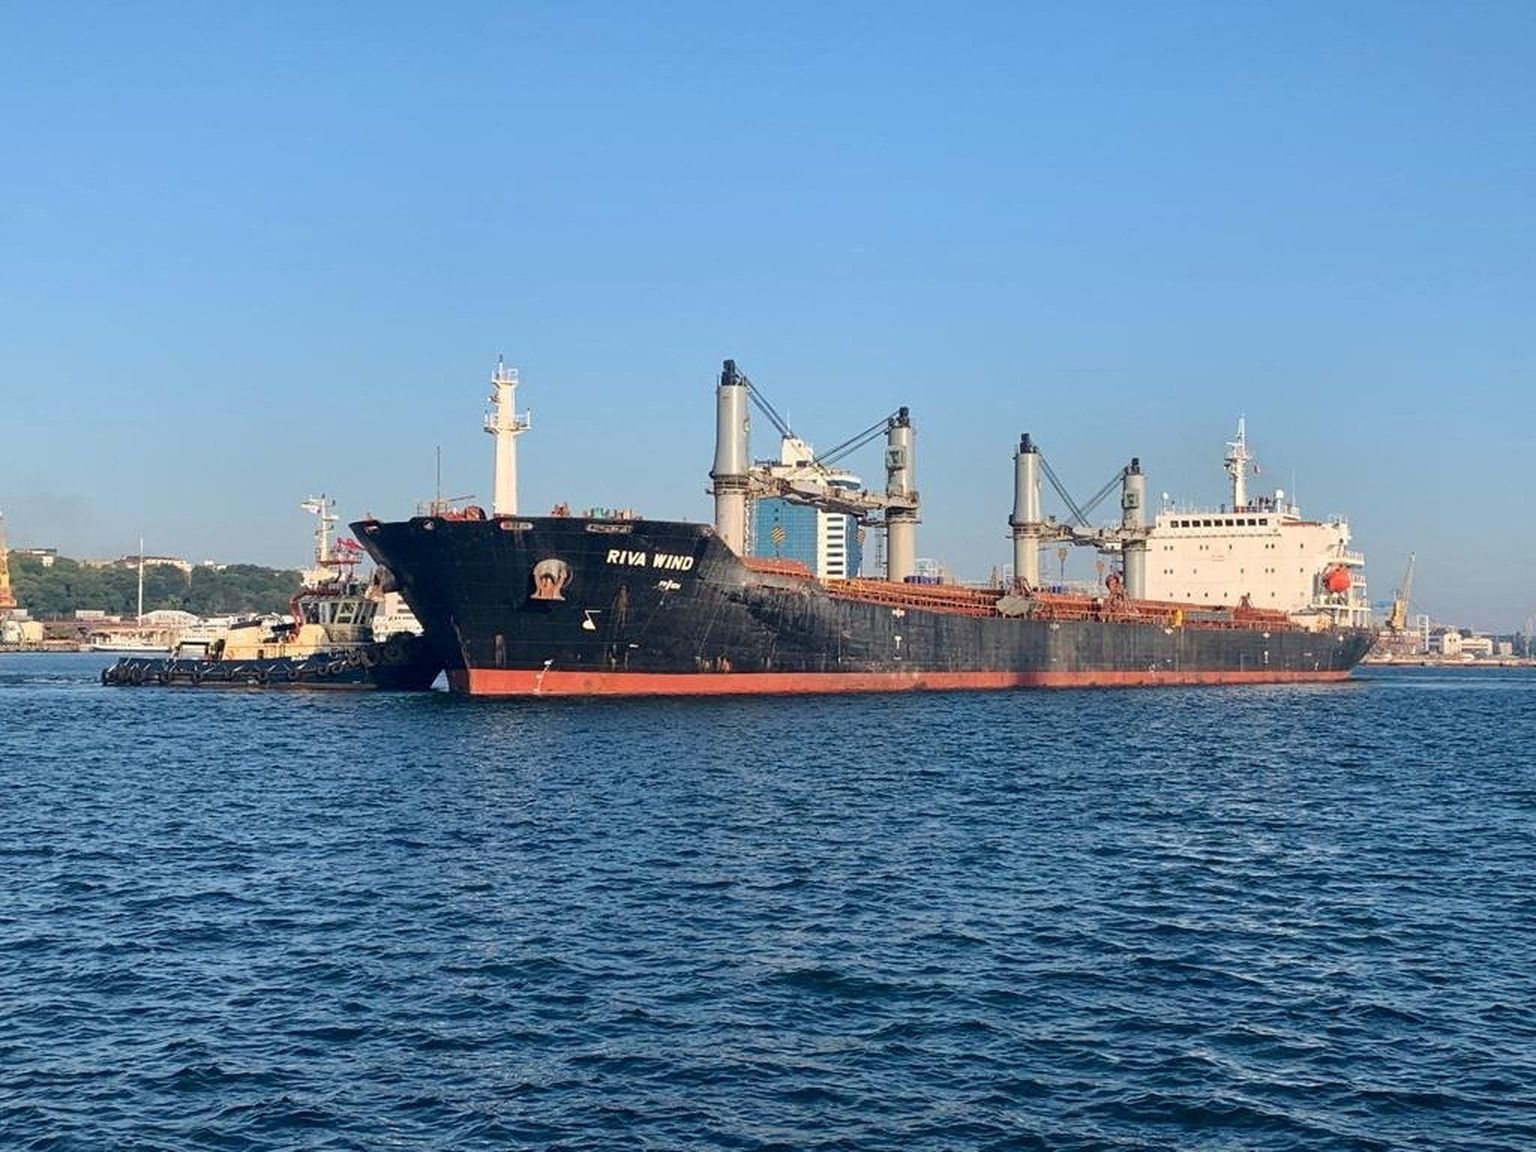 Kuģis "Riva Wind" ar vairāk nekā 100 000 tonnu kukurūzas ceļā uz Turciju.